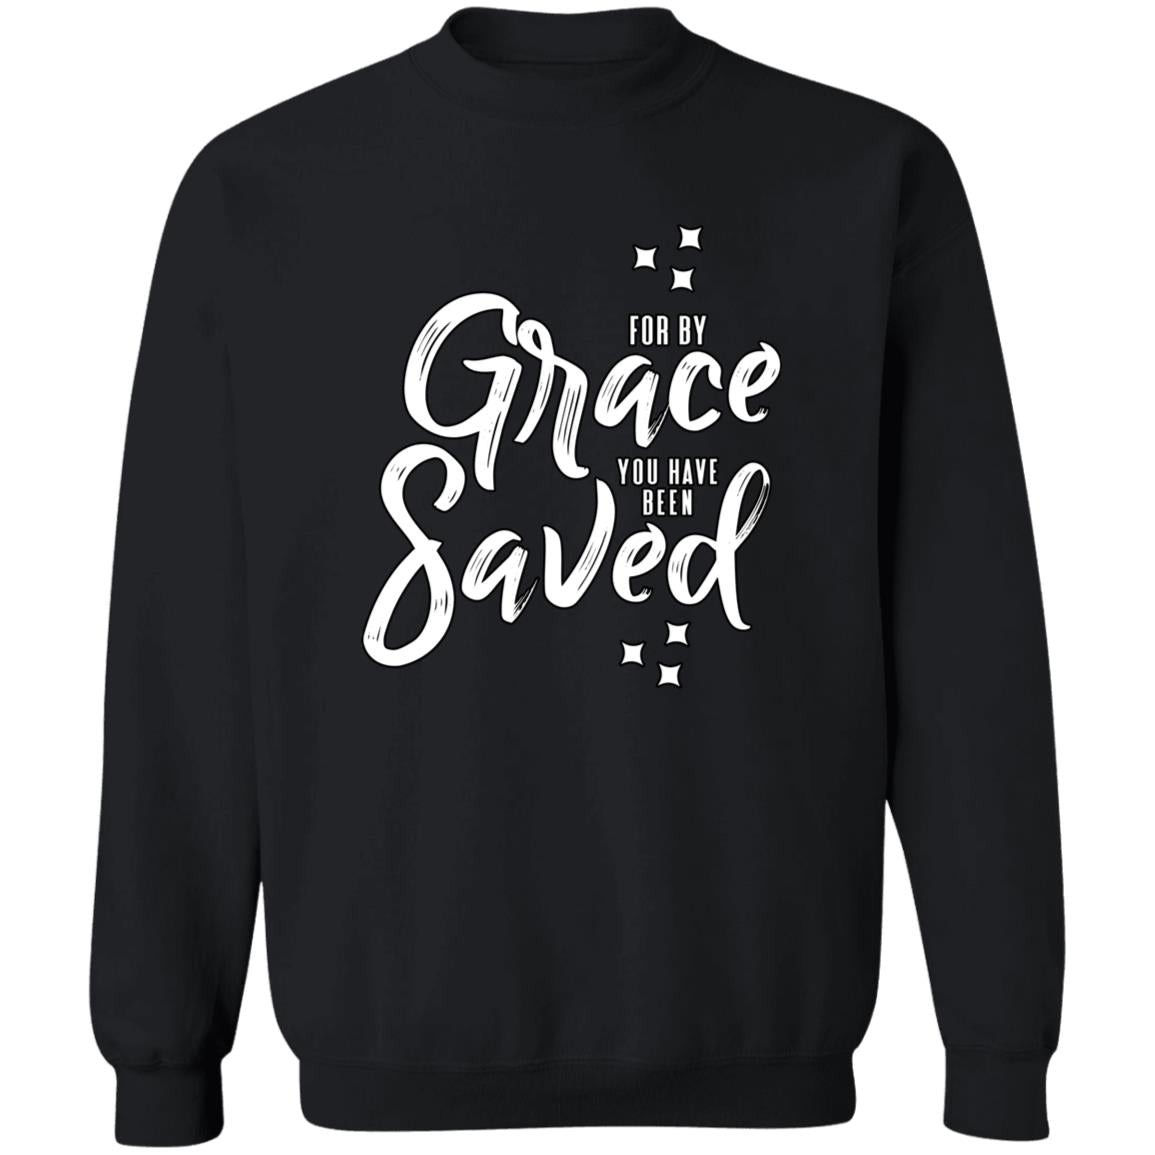 For by Grace (Unisex Sweatshirt)